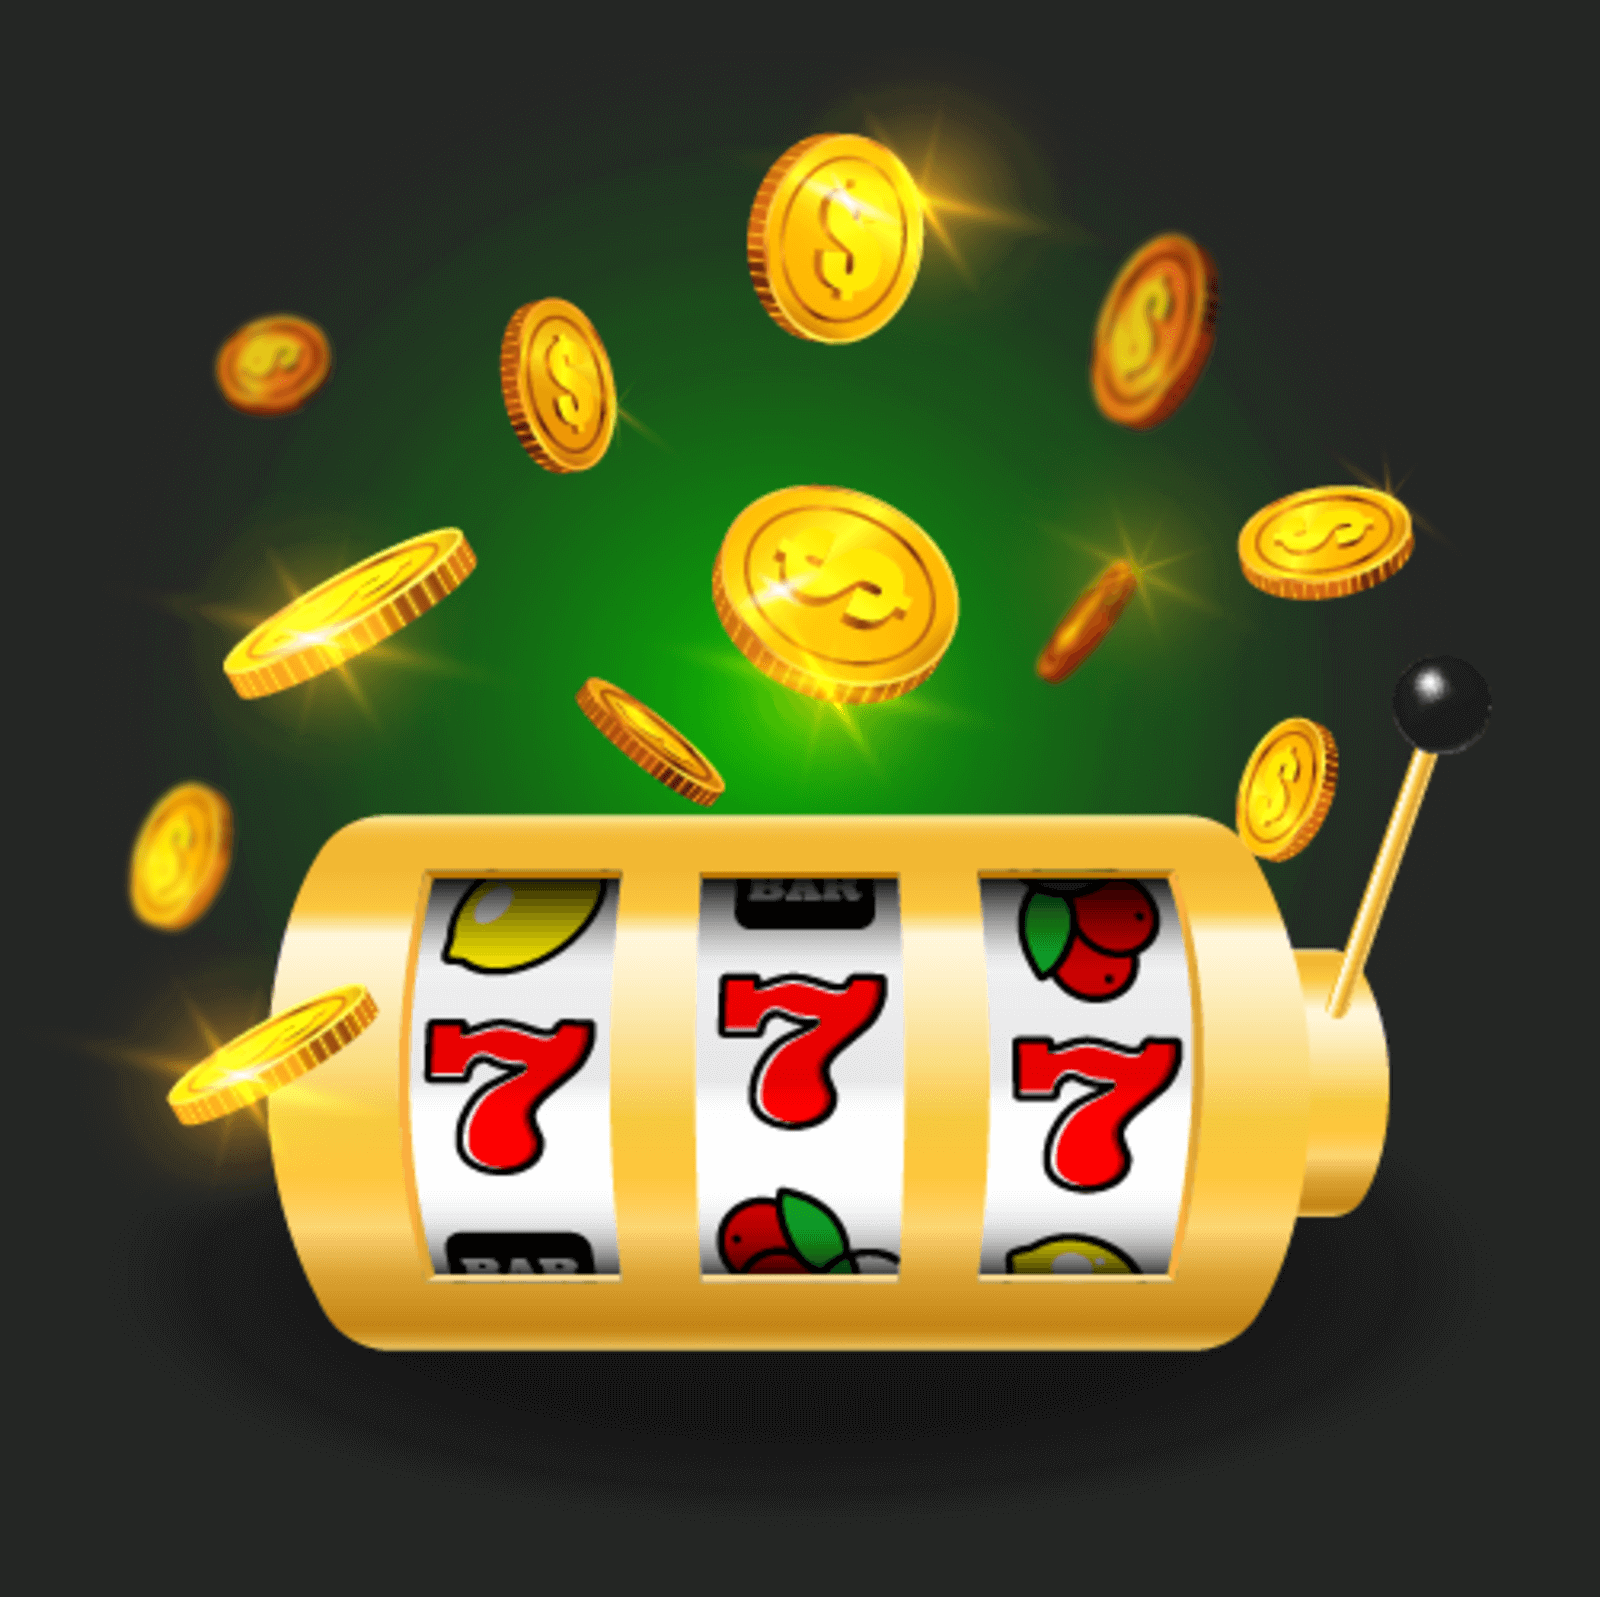 maquinas tragamonedas gratis en casinos 1600 